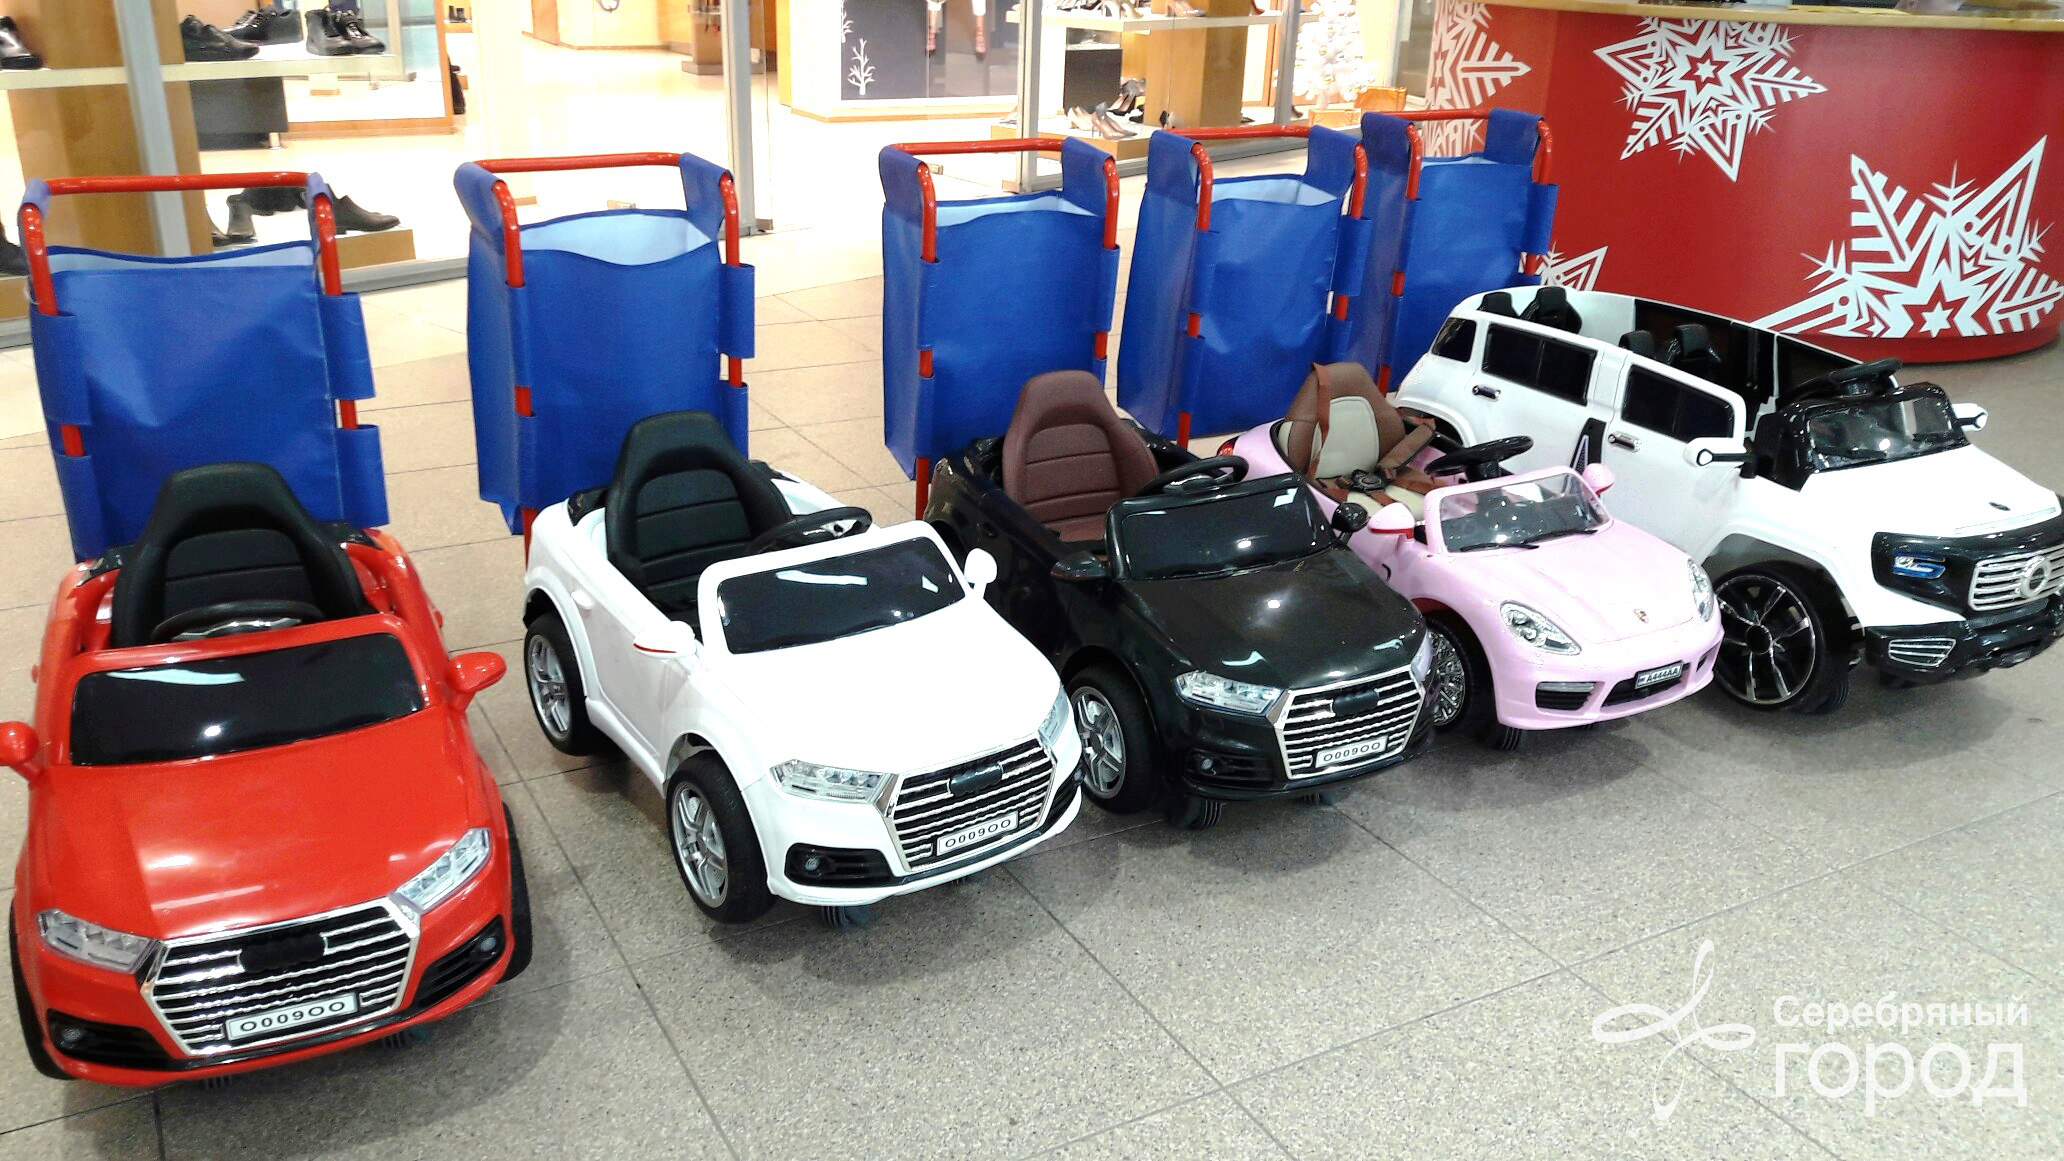 Машинки на прокат. Машина напрокат для детей. Машинки в торговых центрах. Детские электромобили в ТЦ. Детские электромашинки в ряд.